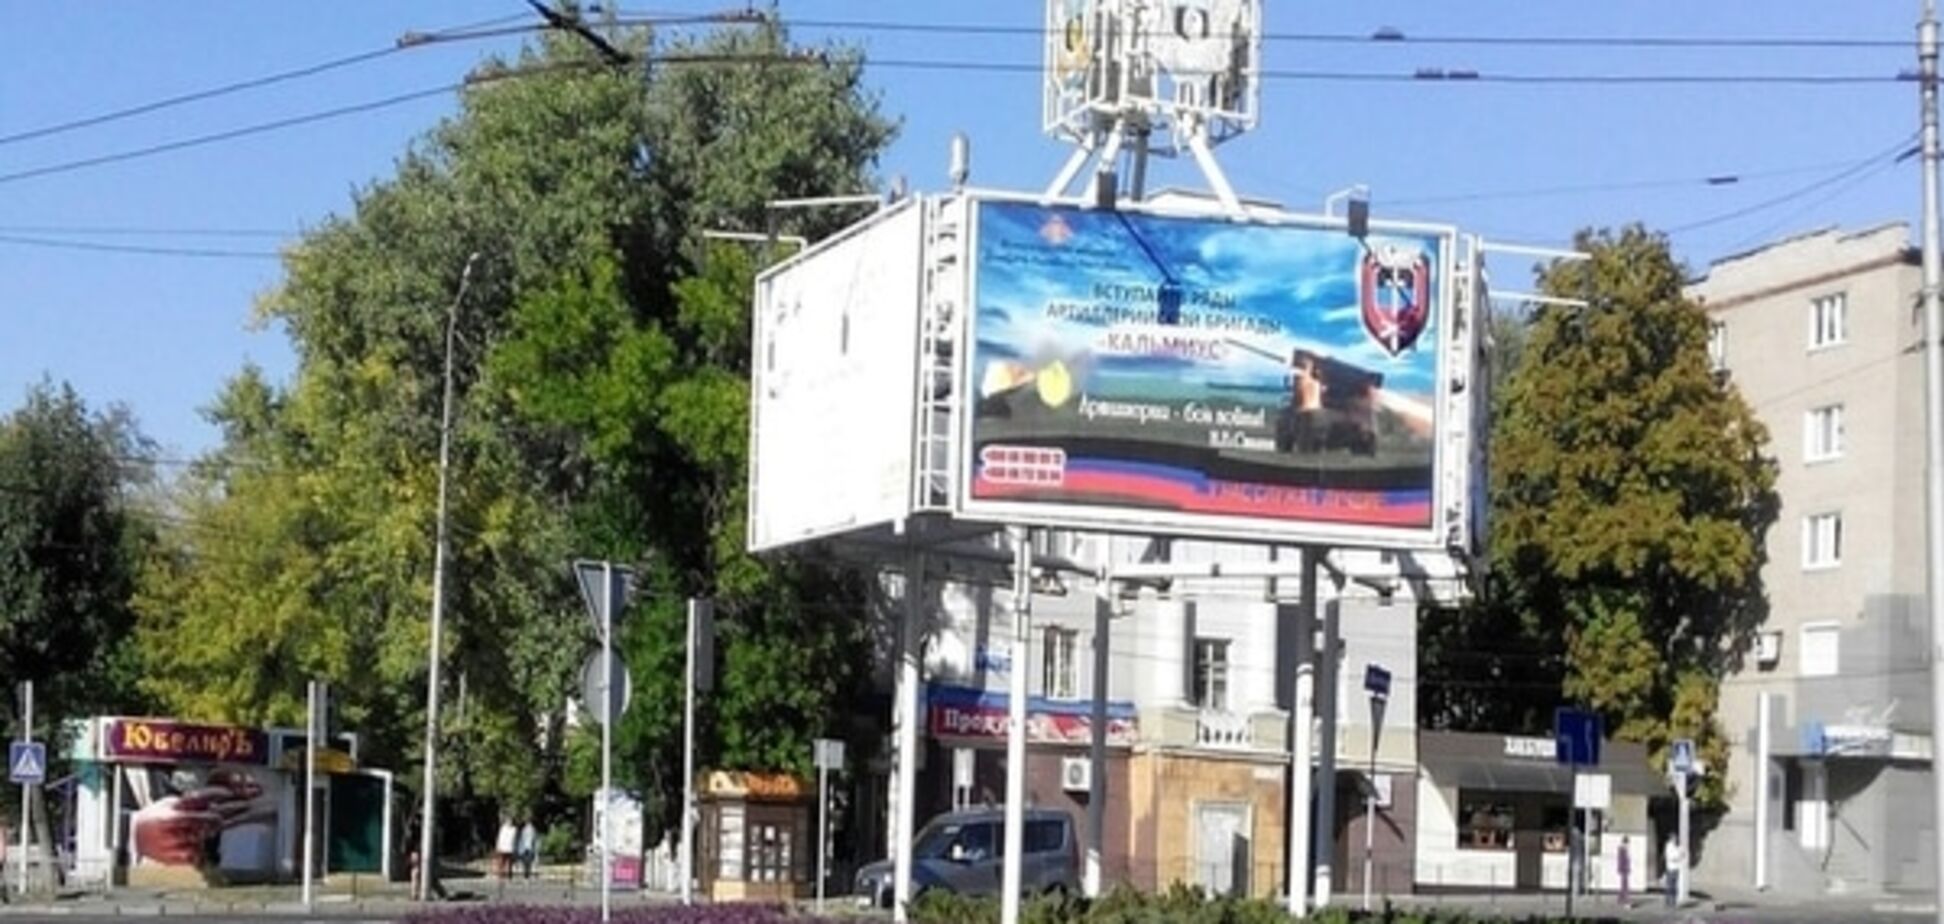 Террористы на плакатах и пустота на улицах: опубликованы новые фото 'столицы ДНР'